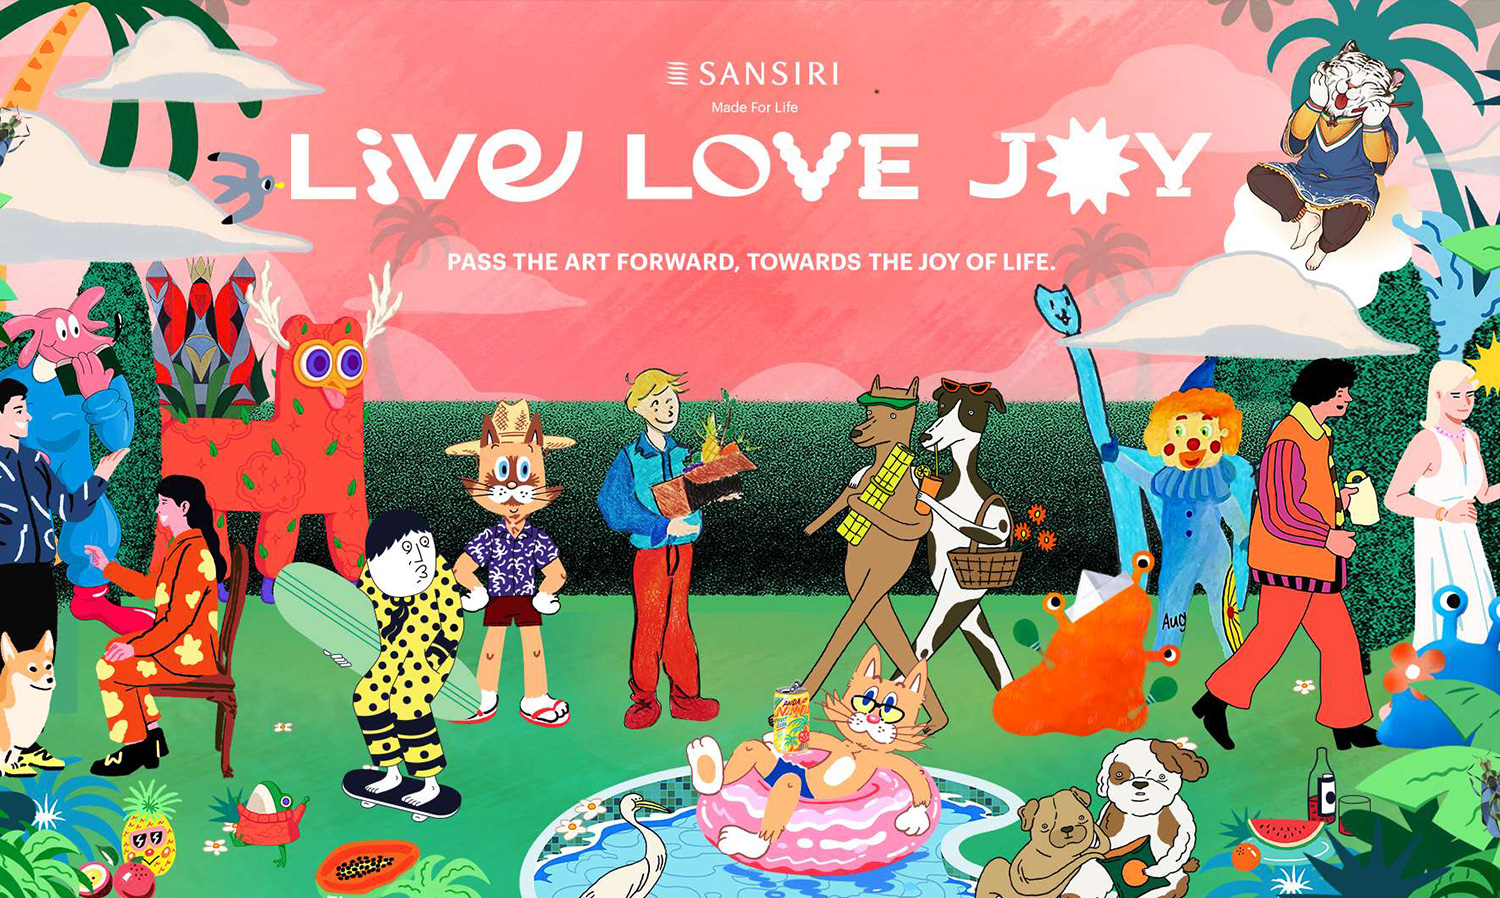 แสนสิริ ดึง 13 ศิลปิน ปลุกพลังบวกและให้กำลังใจคนไทย ผ่านโลก Virtual ในแคมเปญฟีลกู๊ด Live Love Joy  ดีเดย์ 21 ก.ย. นี้